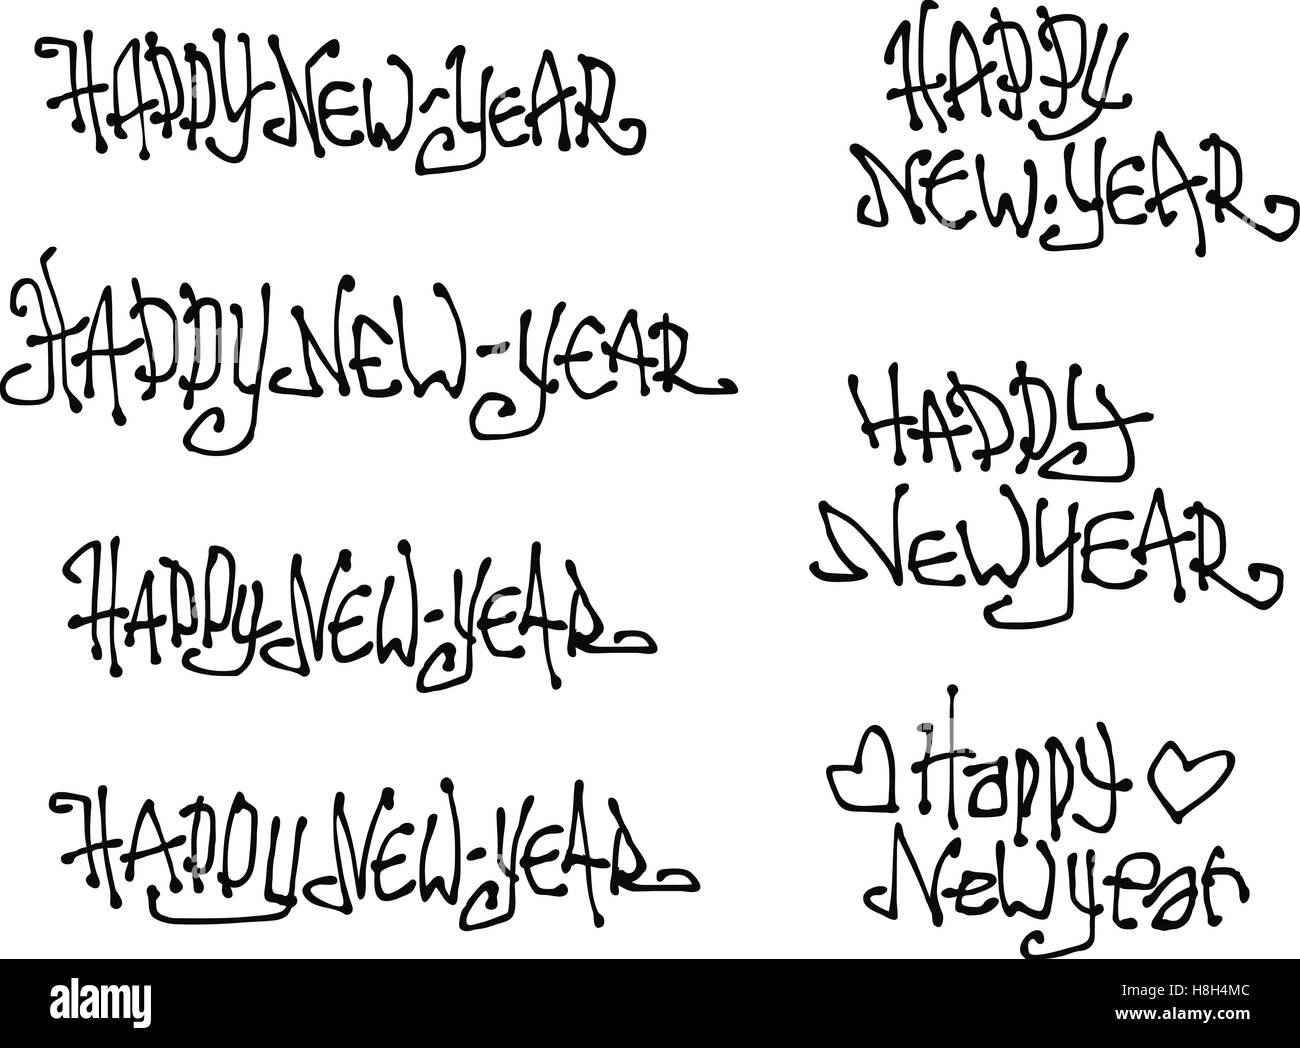 Felice anno nuovo desiderio disegnati a mano ricci liquido i caratteri Graffiti Illustrazione Vettoriale